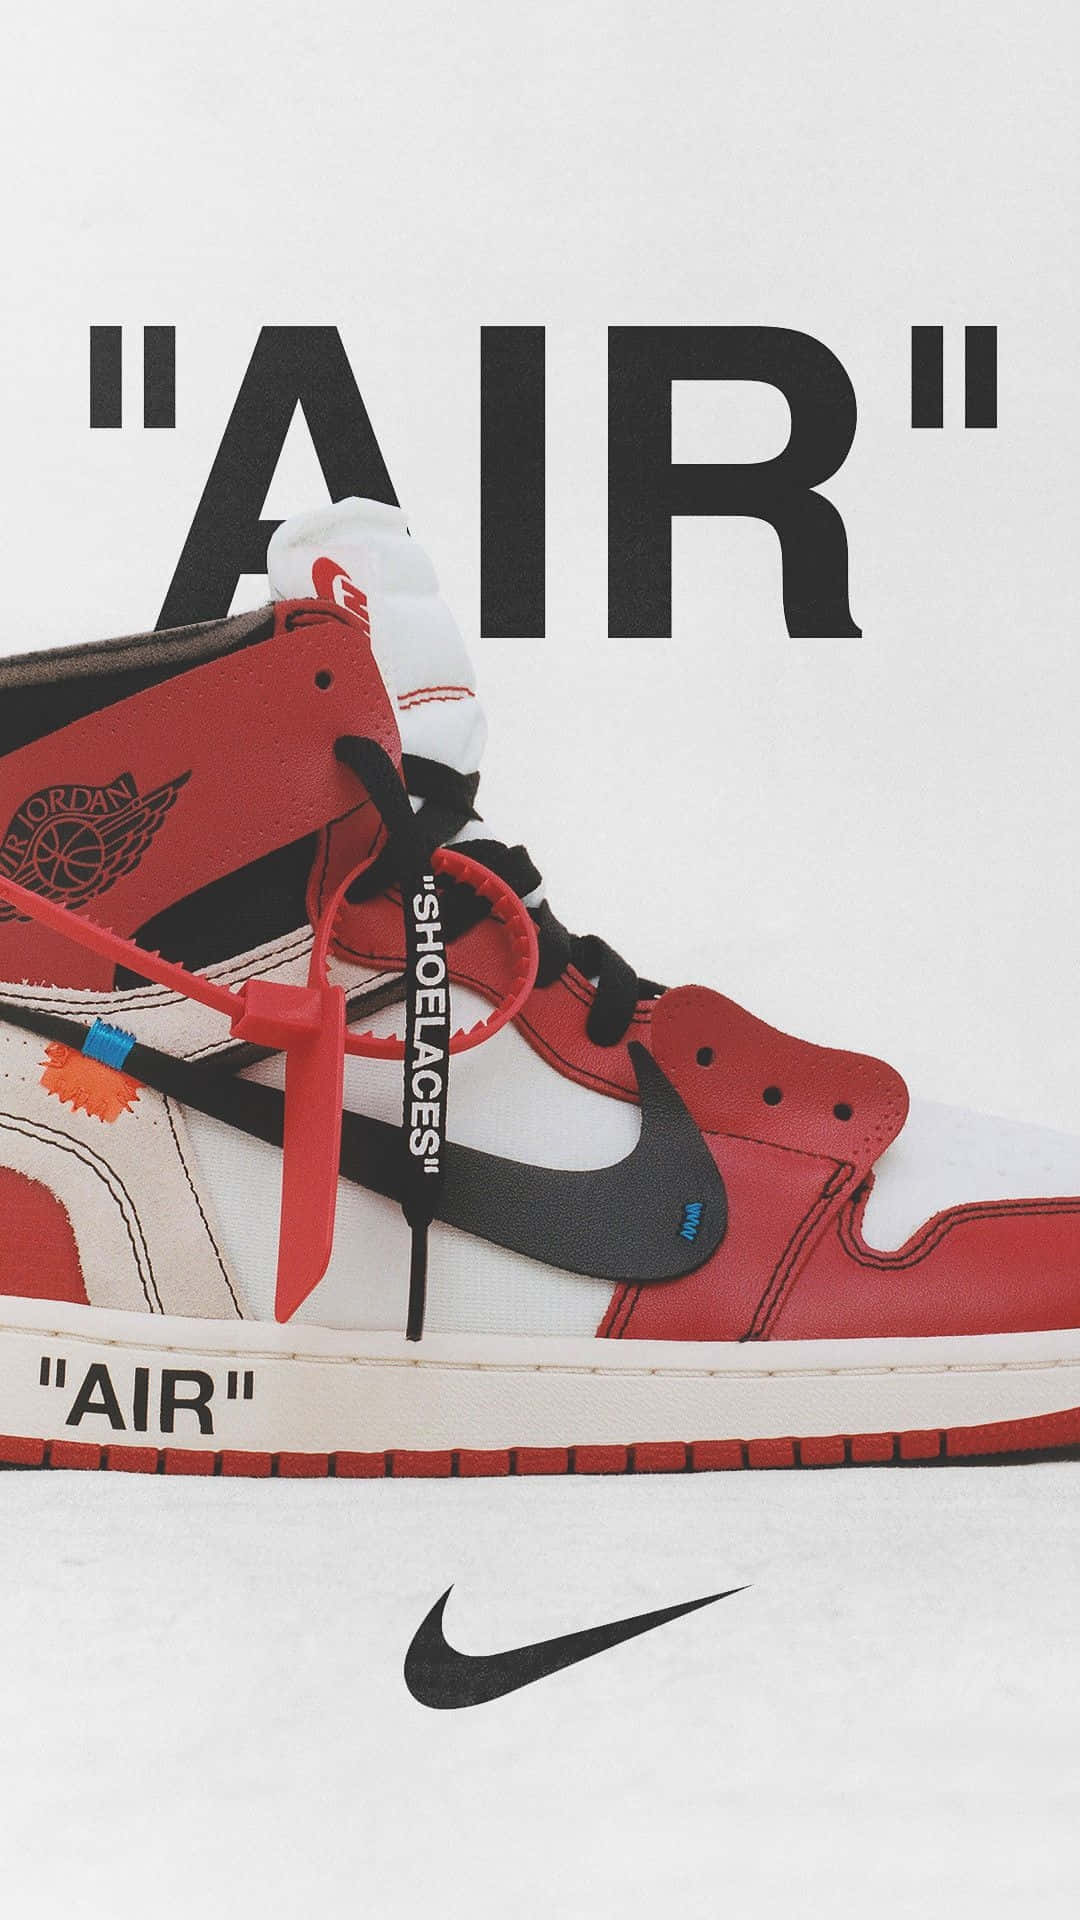 Red Sneakers Nike Air Wallpaper